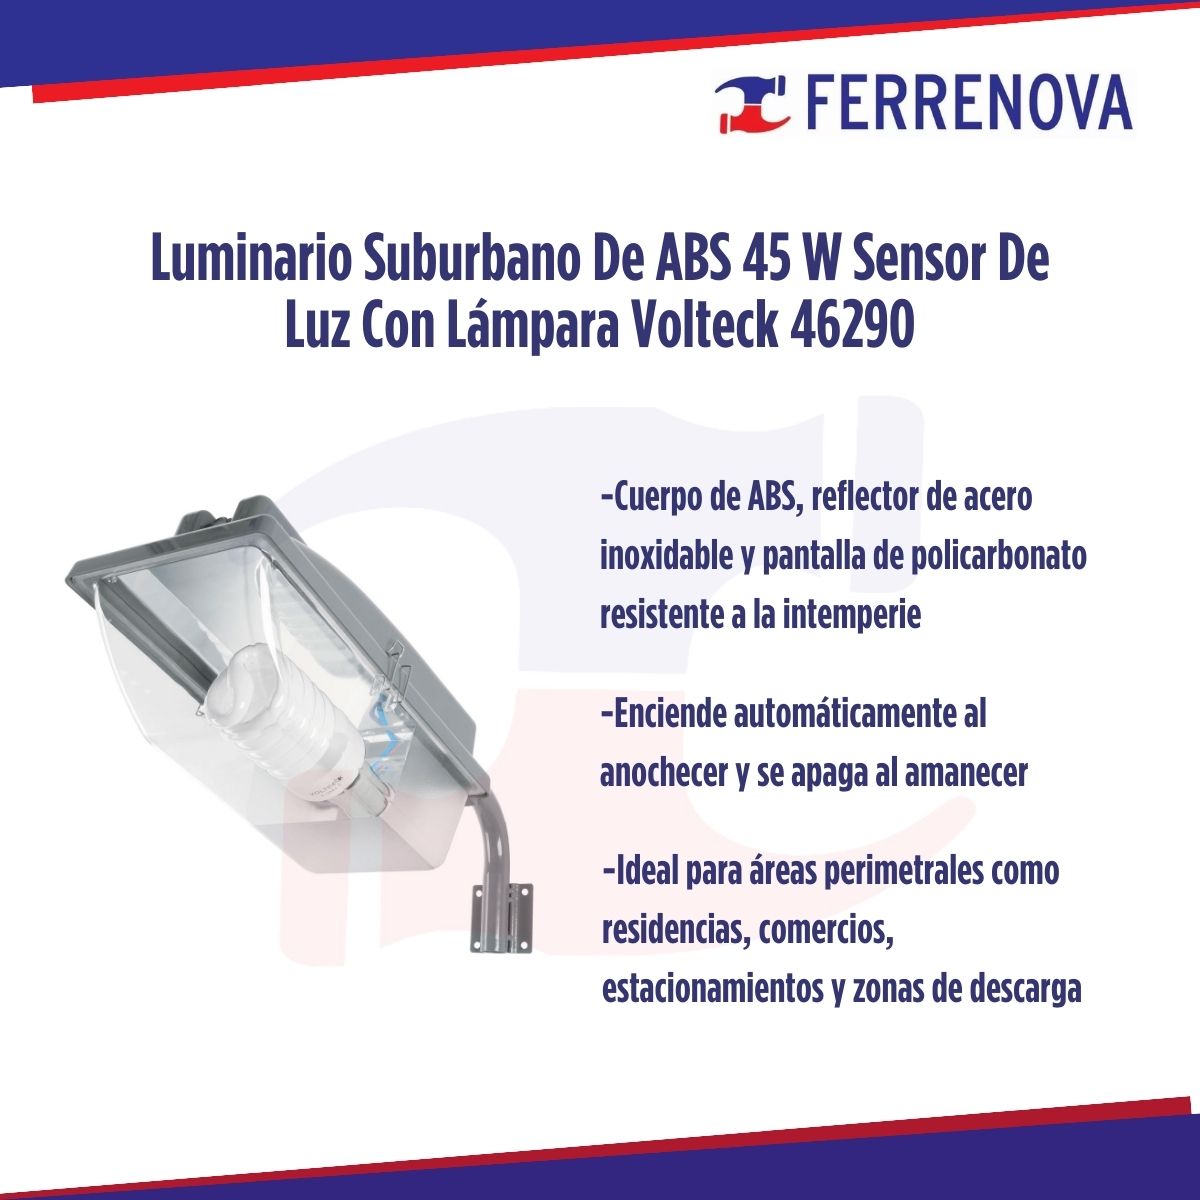 Luminario Suburbano De ABS 45 W Sensor De Luz Con Lámpara Volteck 46290